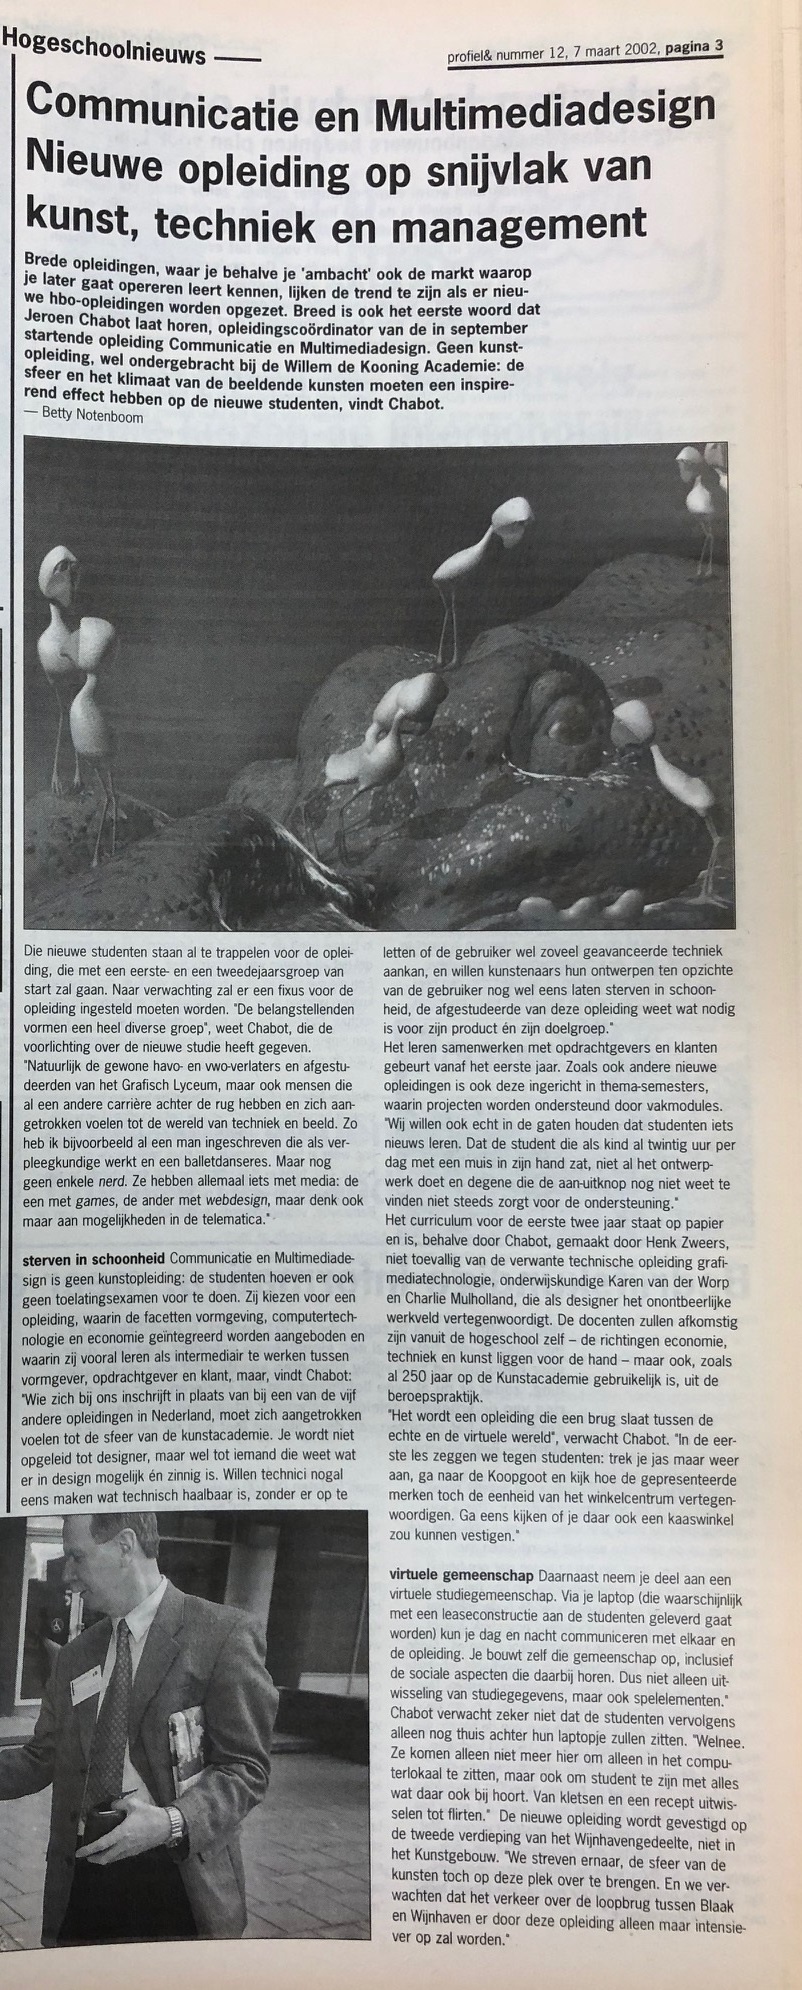 Foto van het krantenartikel over cmd uit 2002